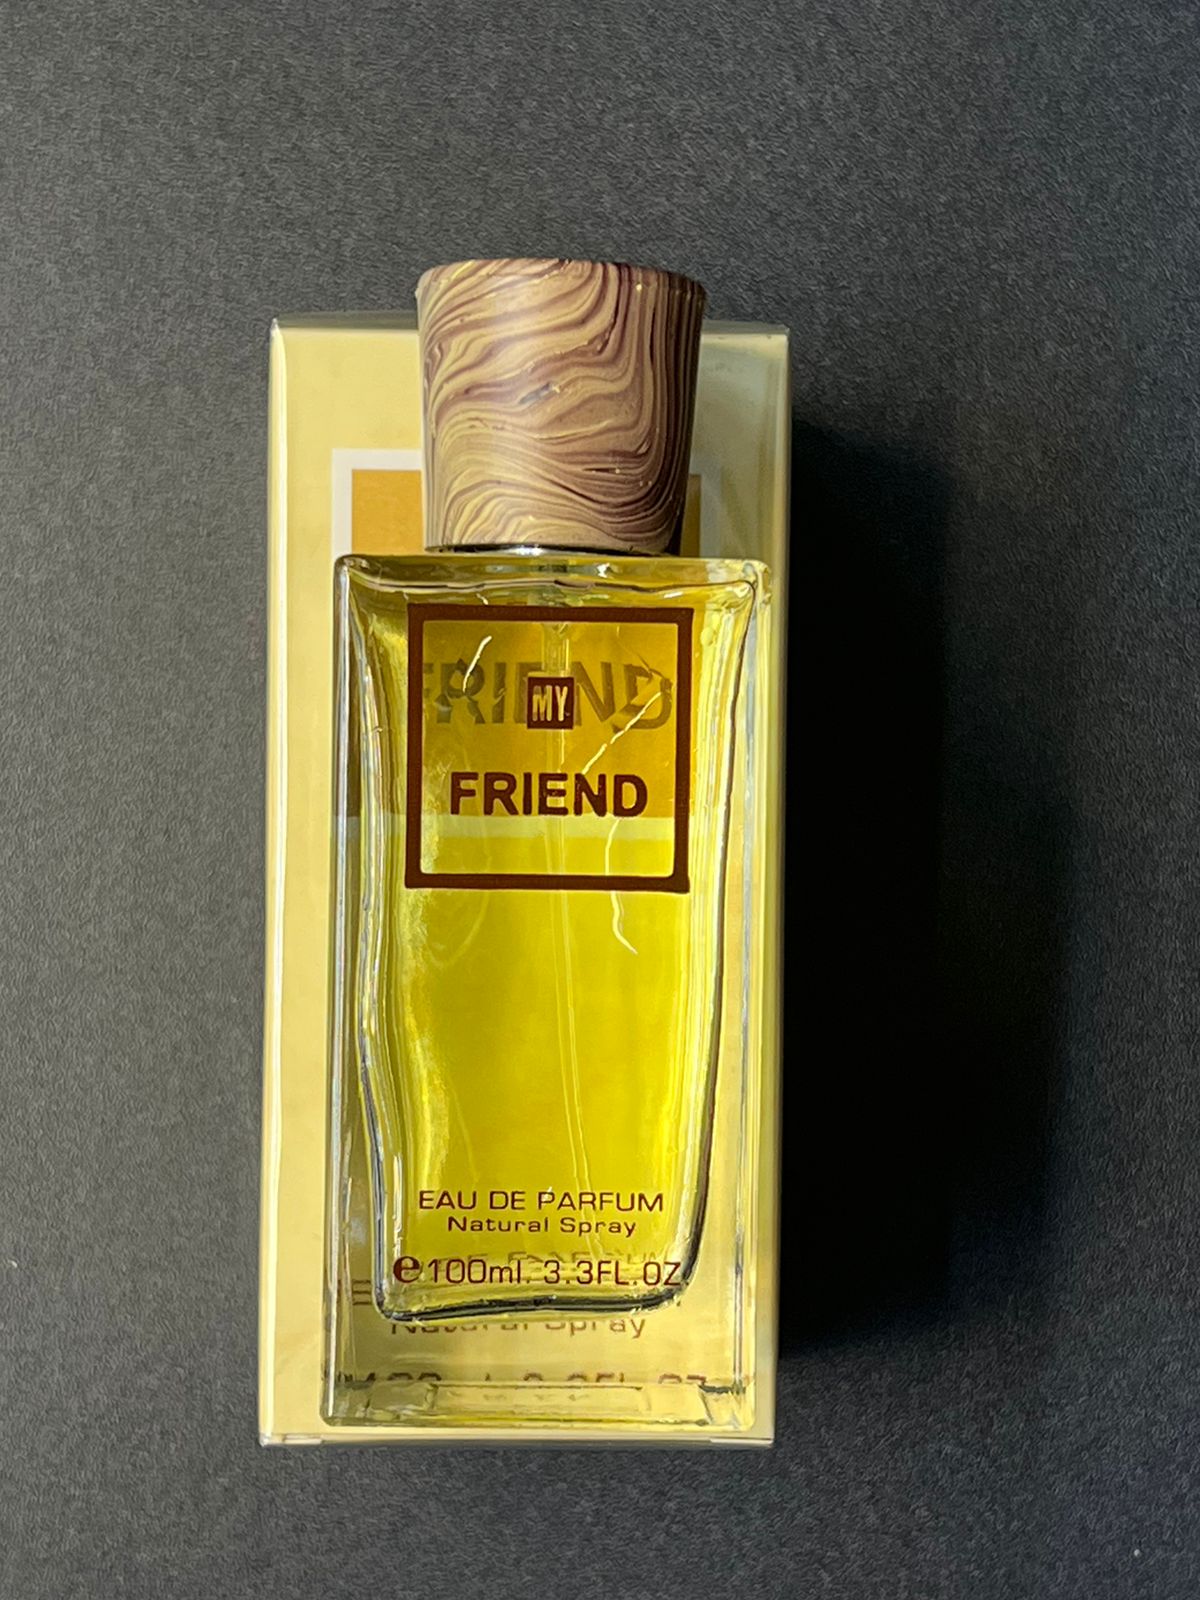 fragrance world friend for unisex 100ml - eau de parfum